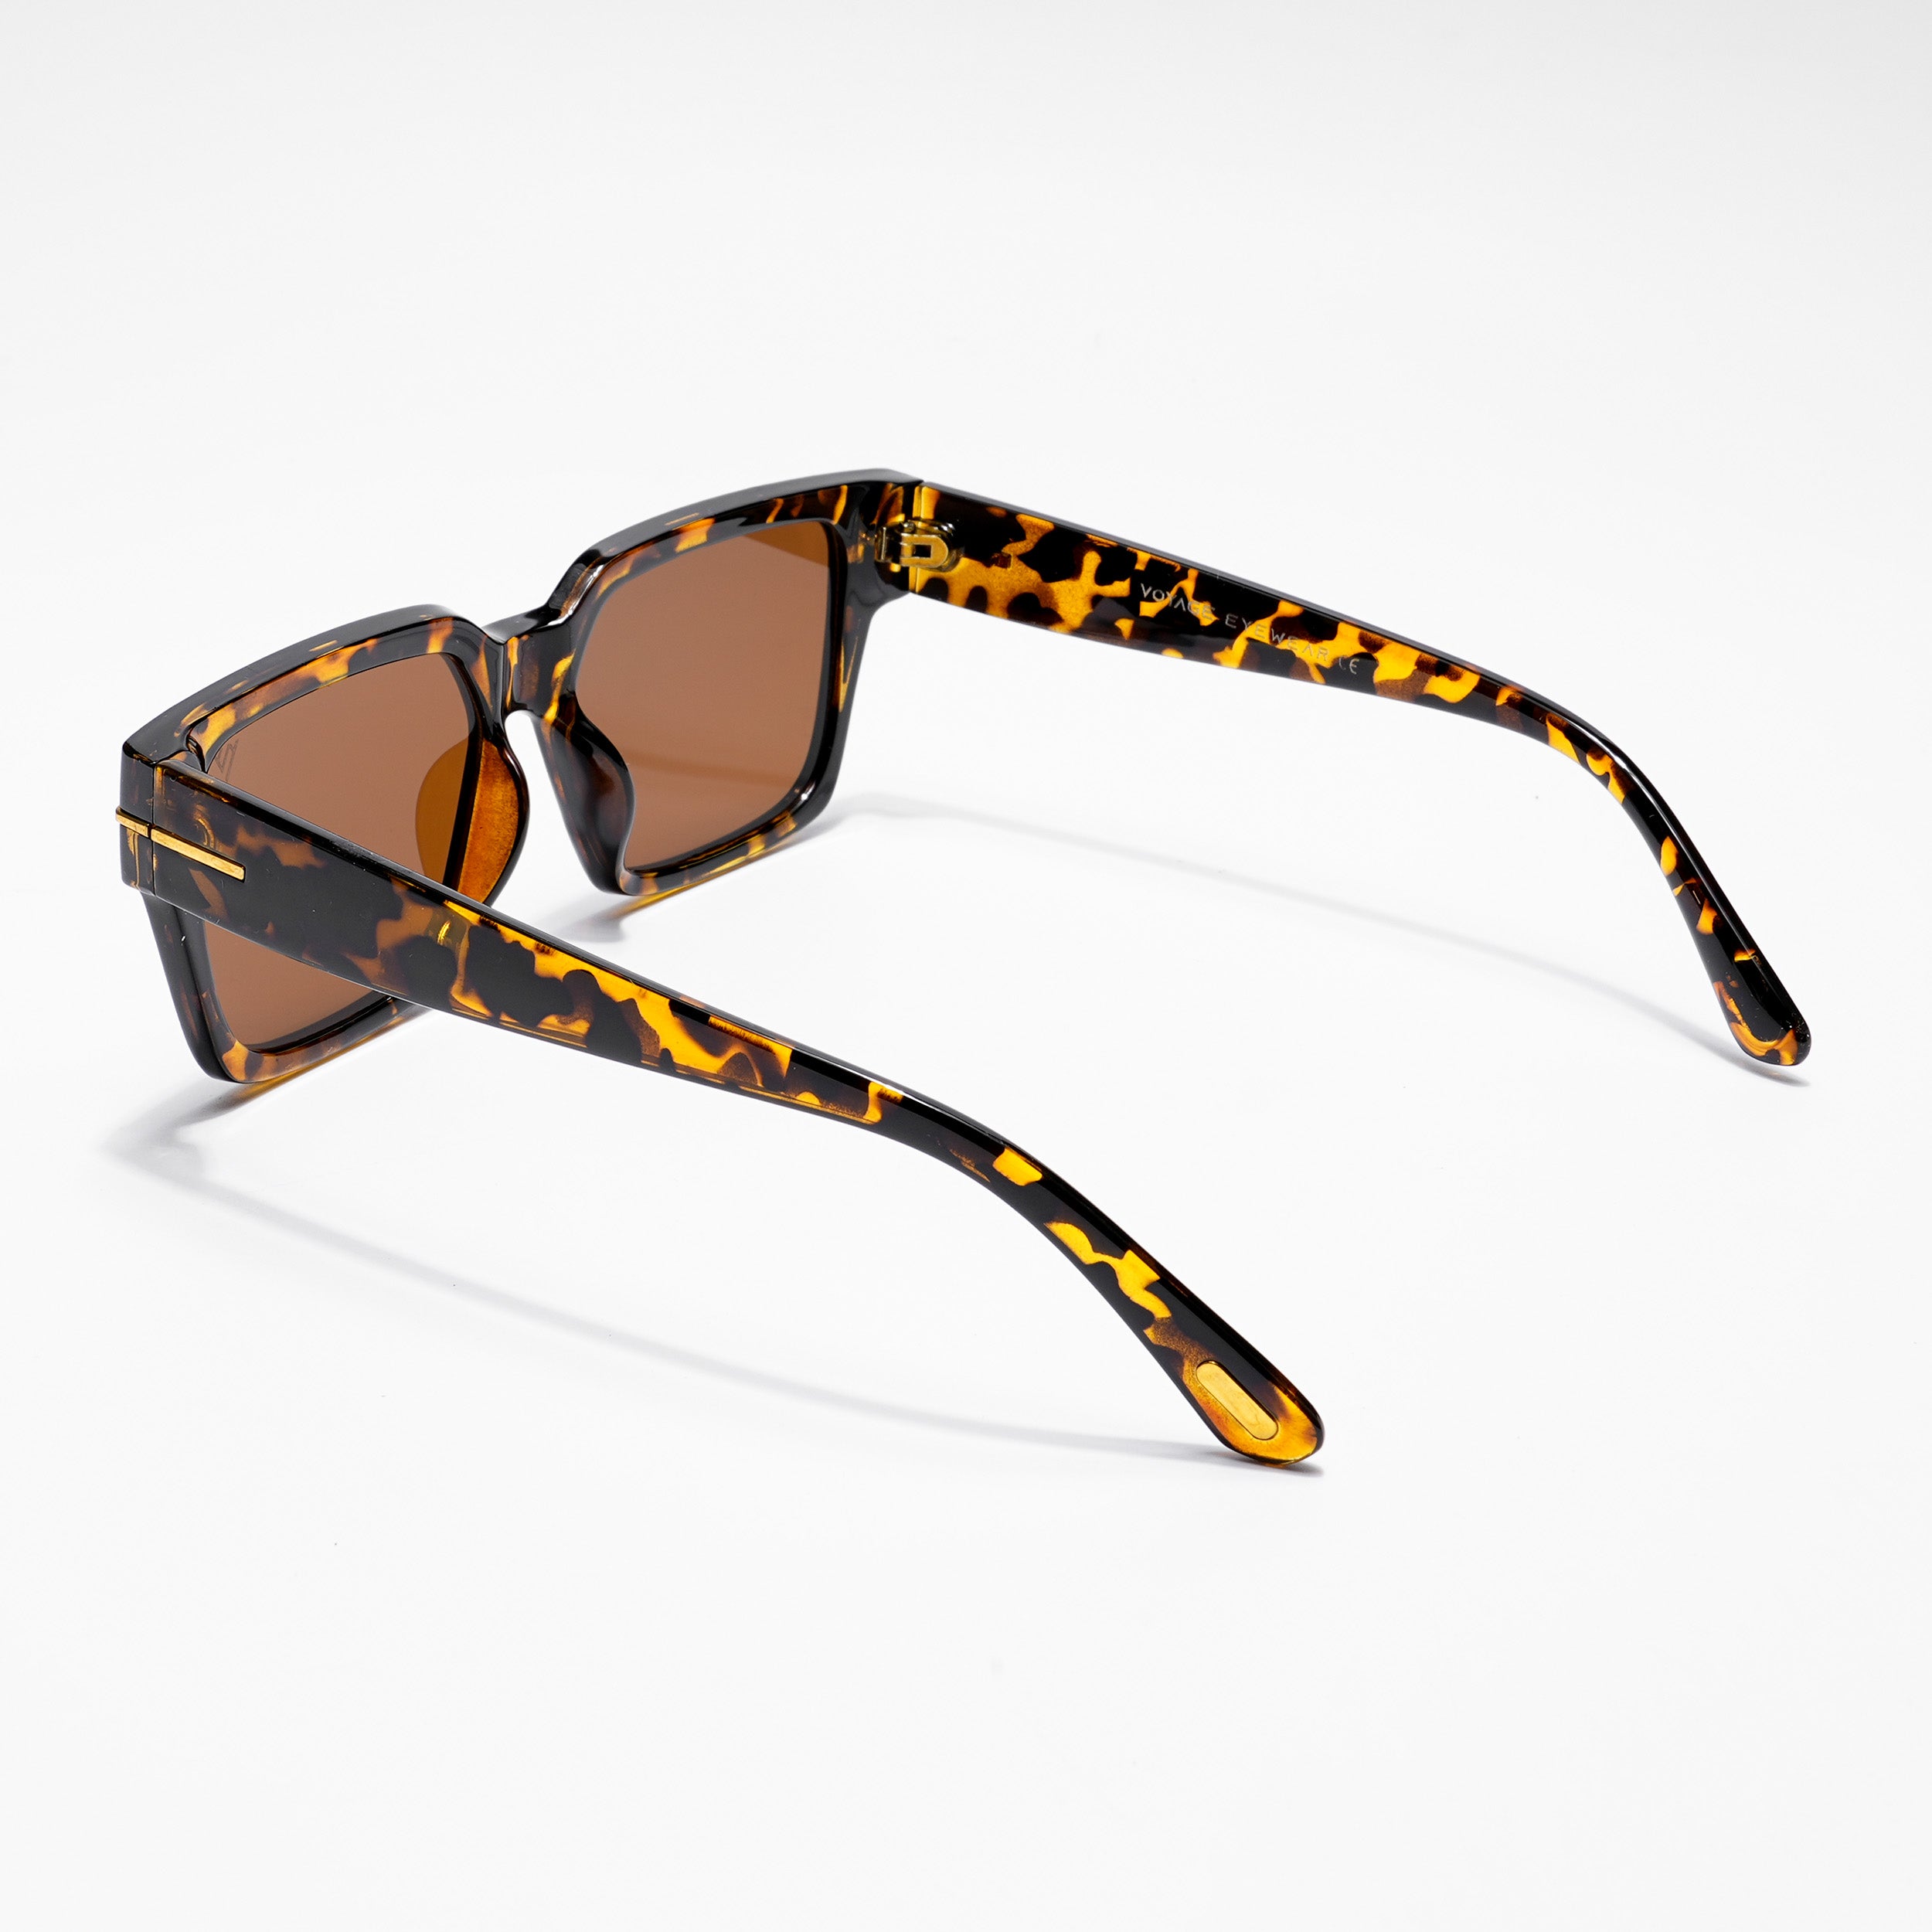 Voyage Brown Wayfarer Sunglasses for Men & Women (A18MG3951)